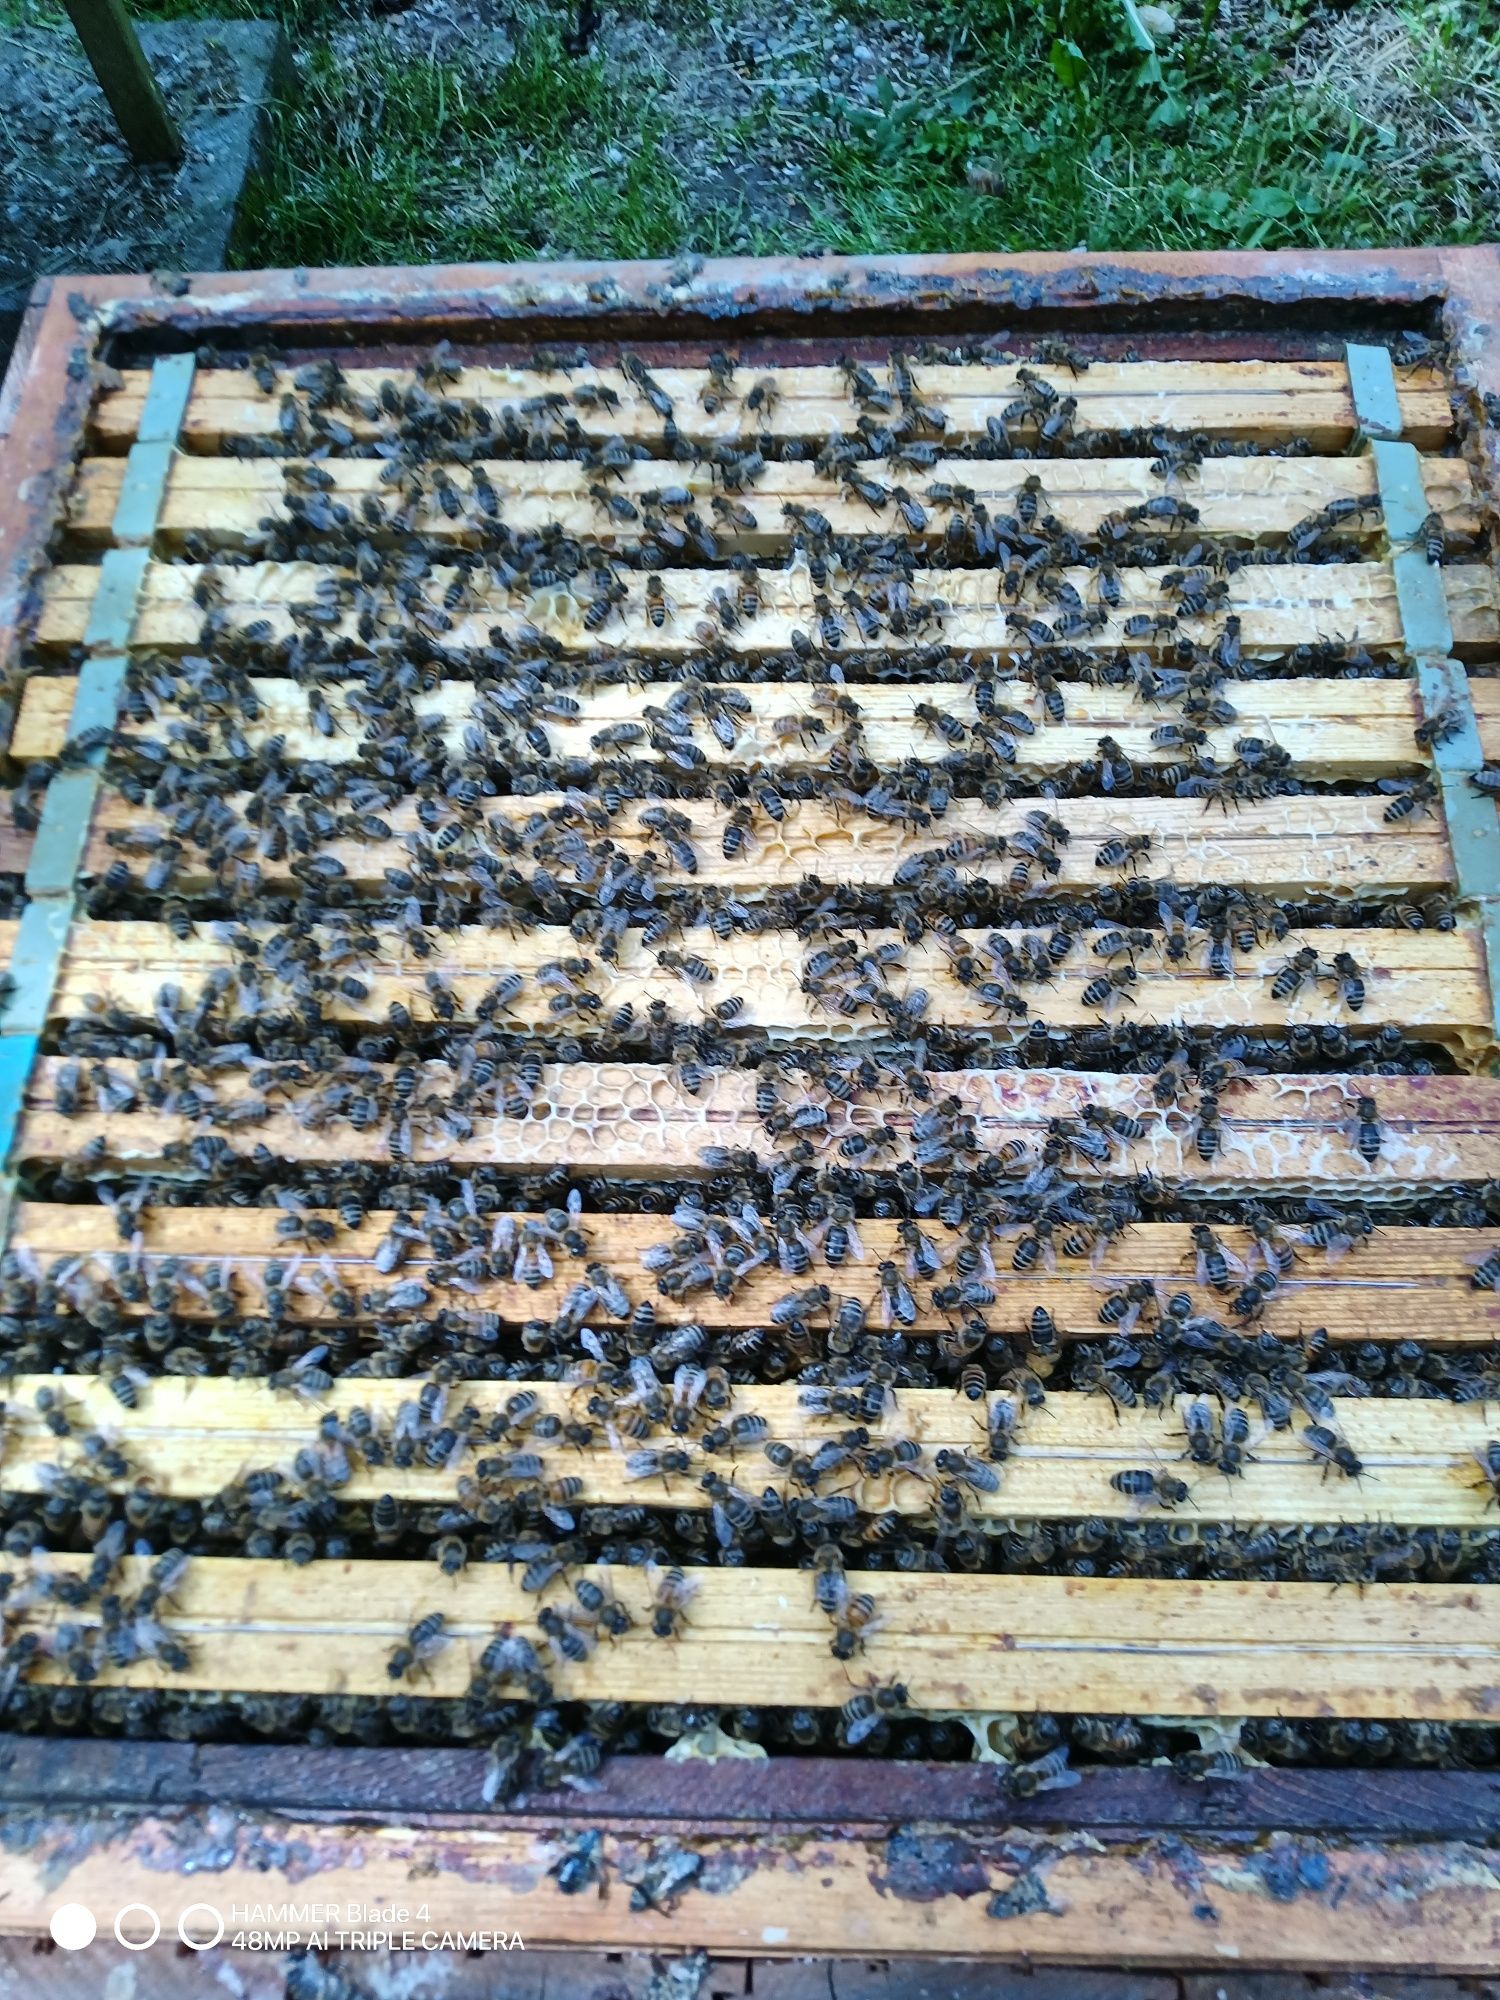 Pszczoły , rodziny pszczele,  odkłady pszczele , ul , krainka